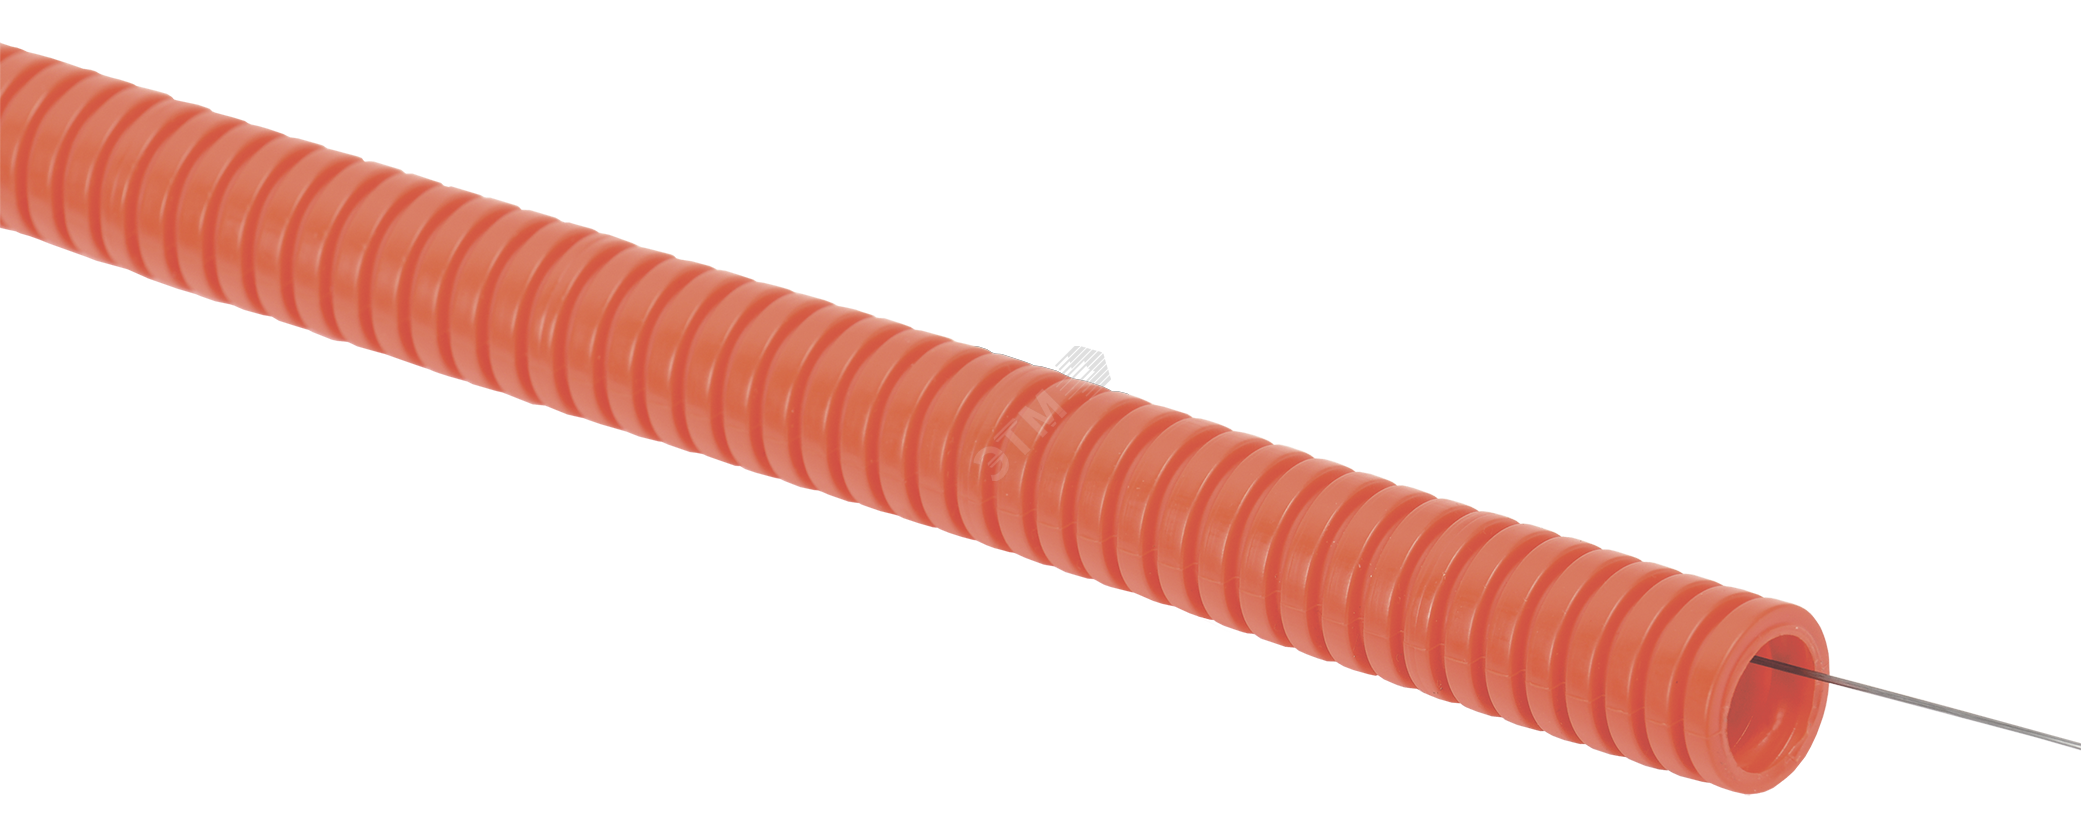 Труба гофр. ПНД d20 с зондом оранжевая тяжелая (100м) IEK